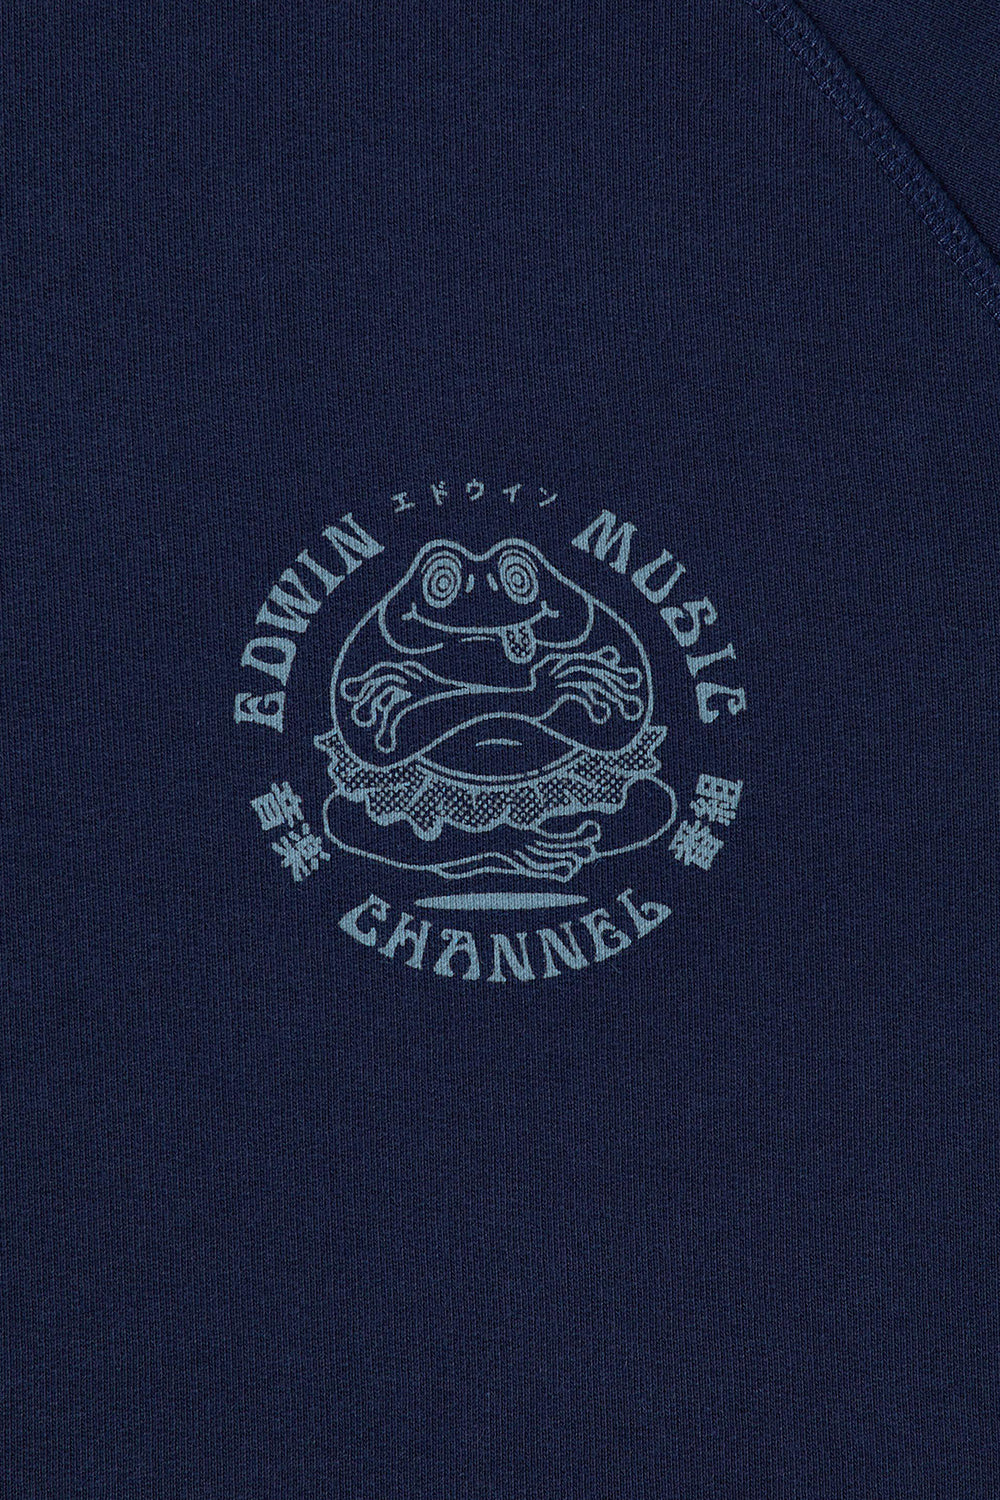 Edwin Music Channel Heavy Sweatshirt (Maritime)